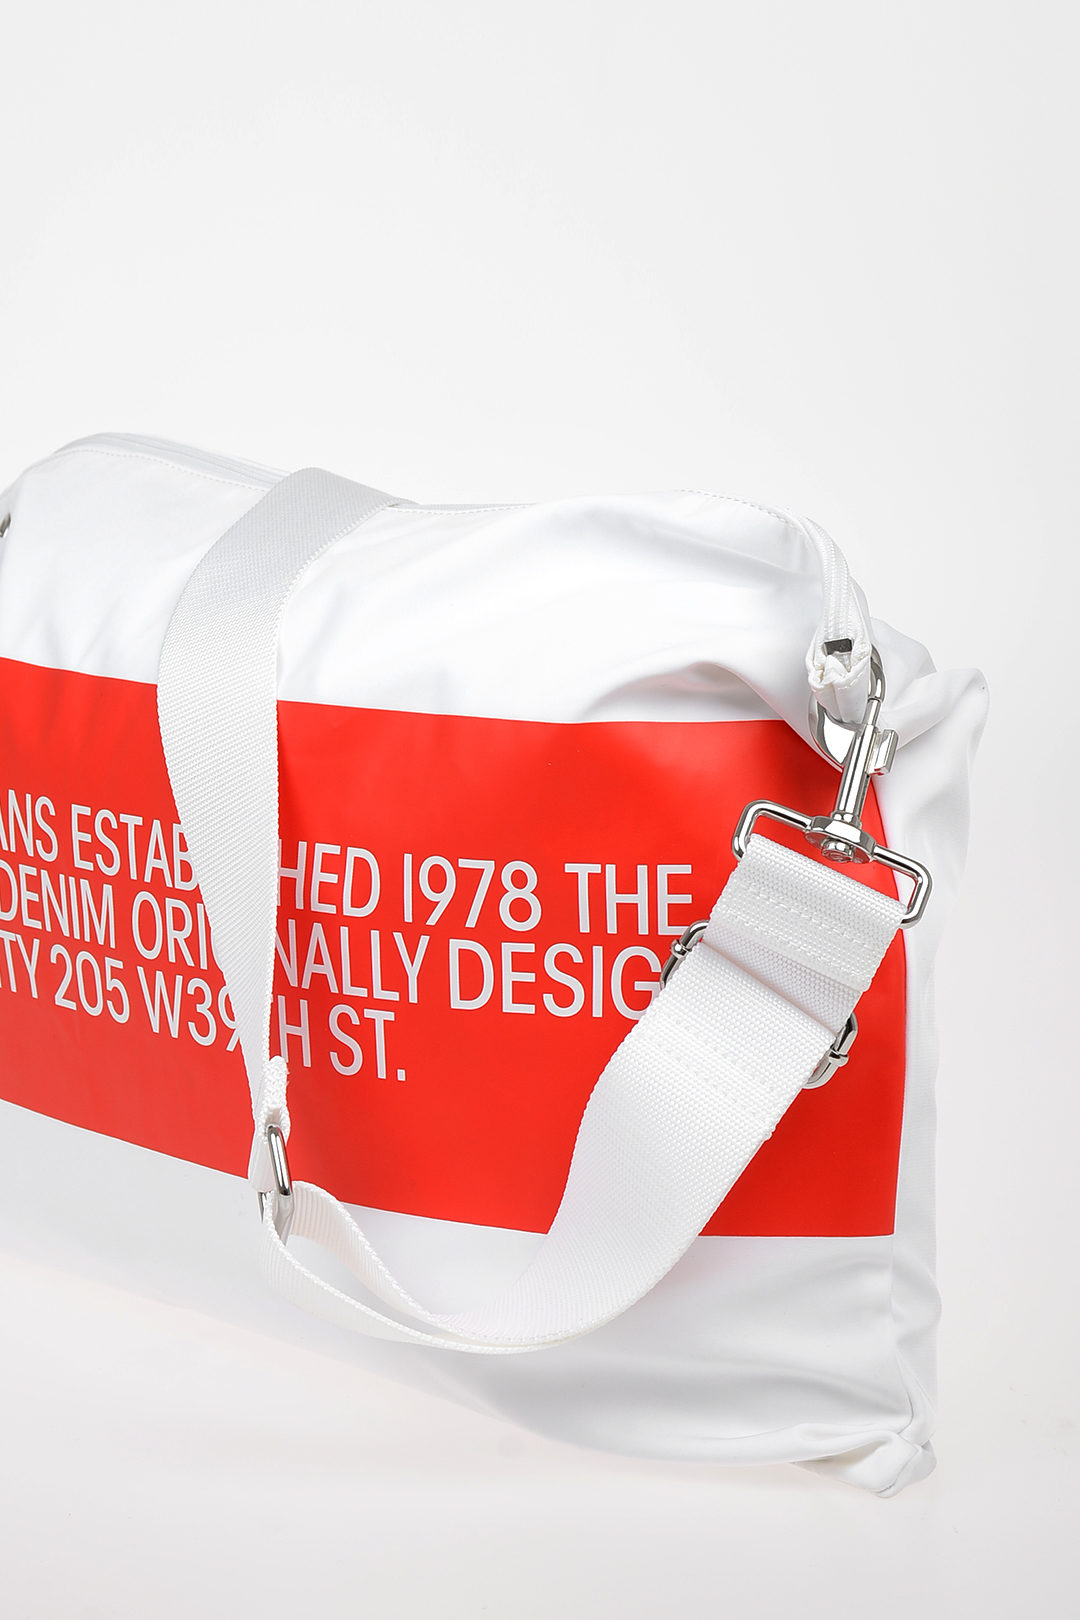 creëren Dynamiek vee Calvin Klein EST 1978 JEANS Fabric Shoulder Bag men - Glamood Outlet